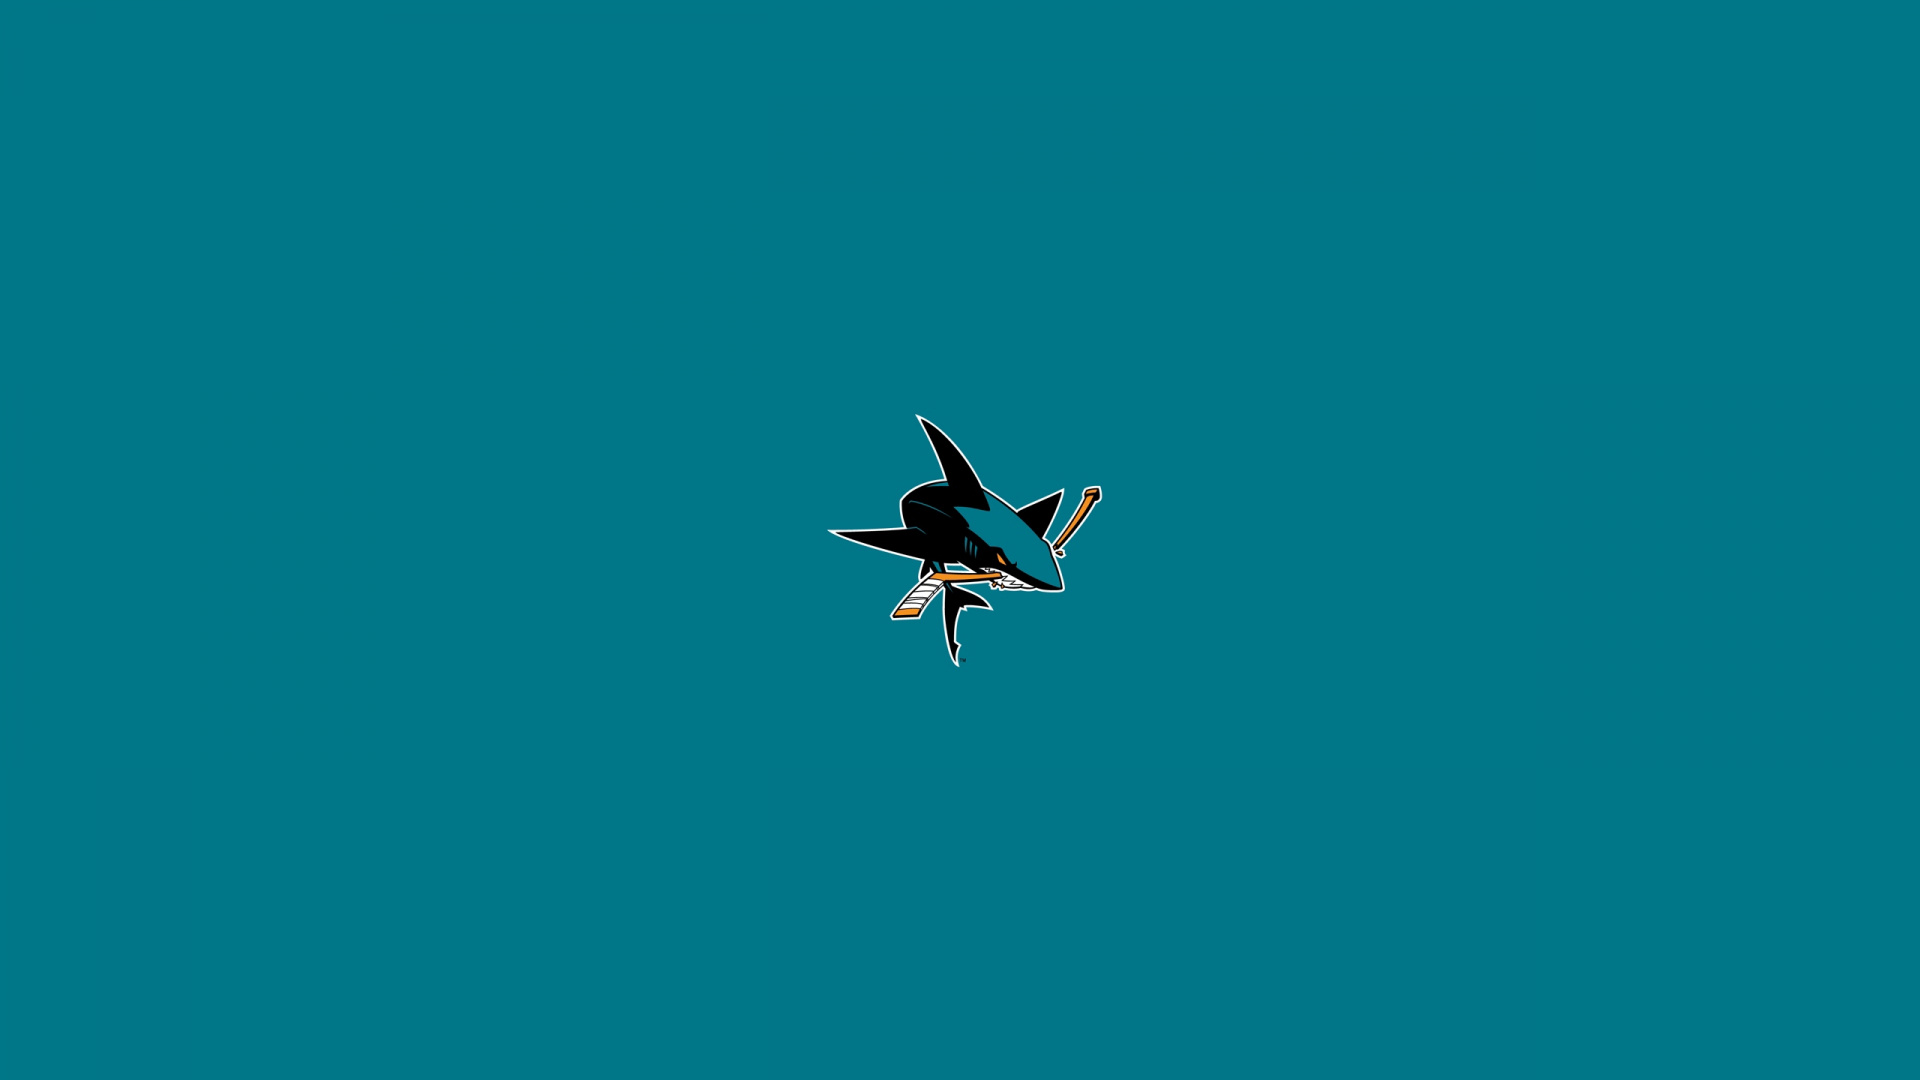 Pájaro Blanco y Negro Volando en el Cielo. Wallpaper in 1920x1080 Resolution